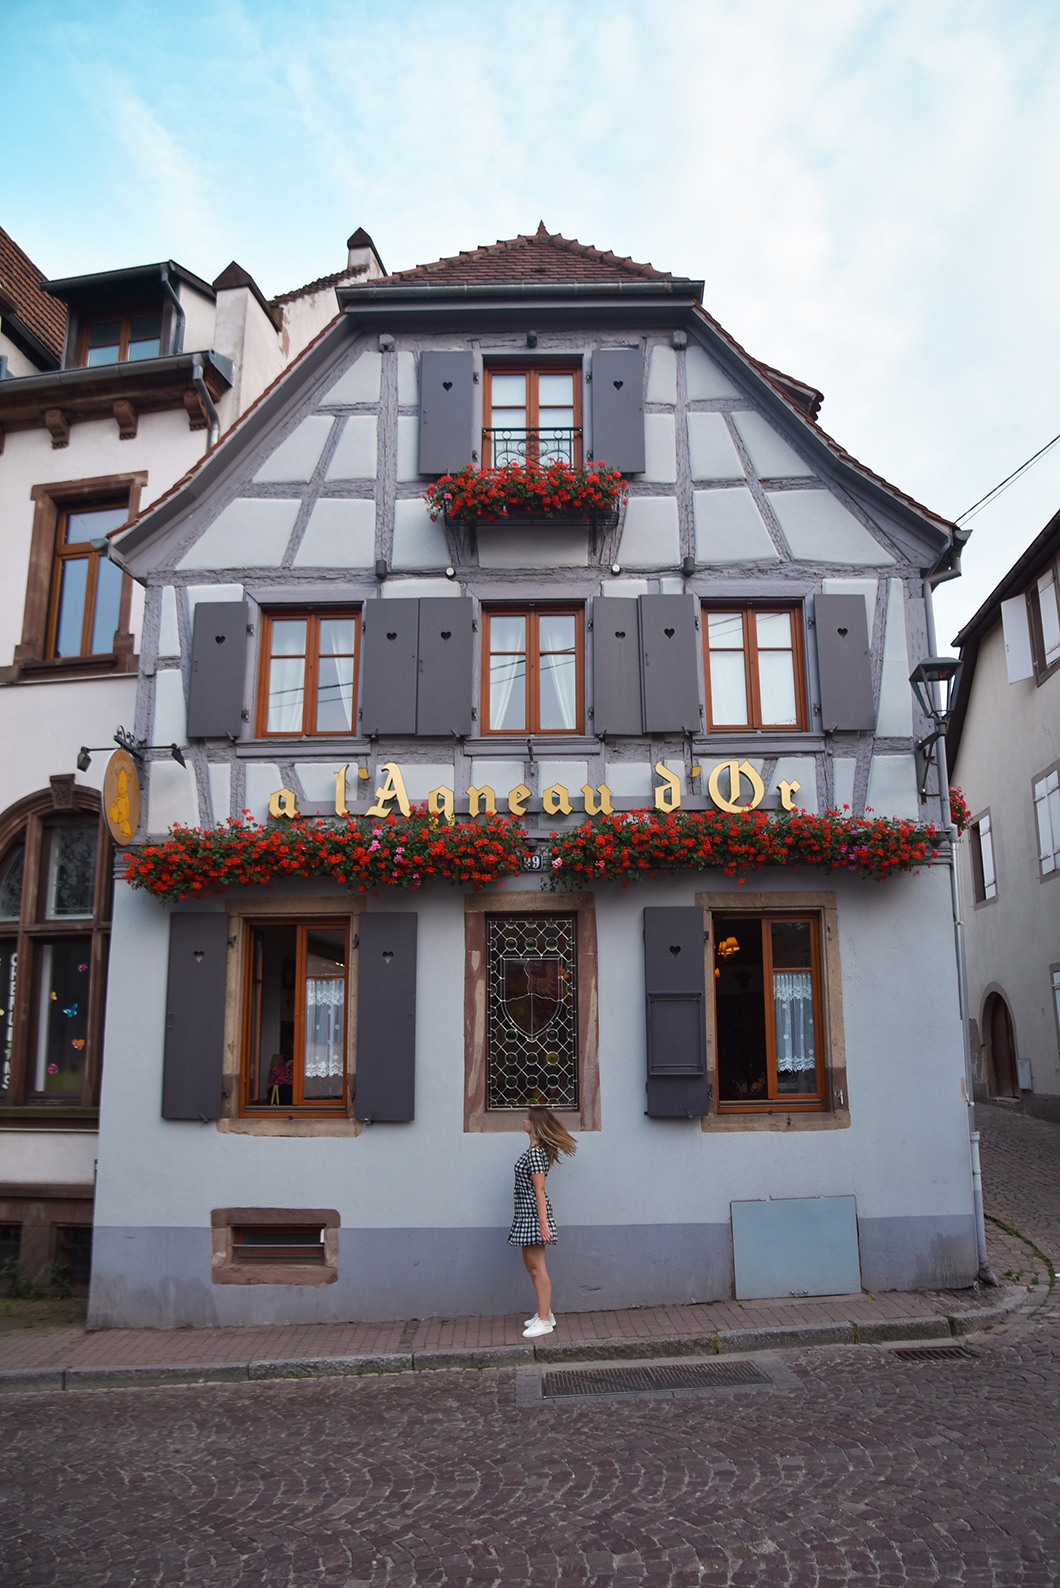 Se balader dans la veille ville de Obernai en Alsace